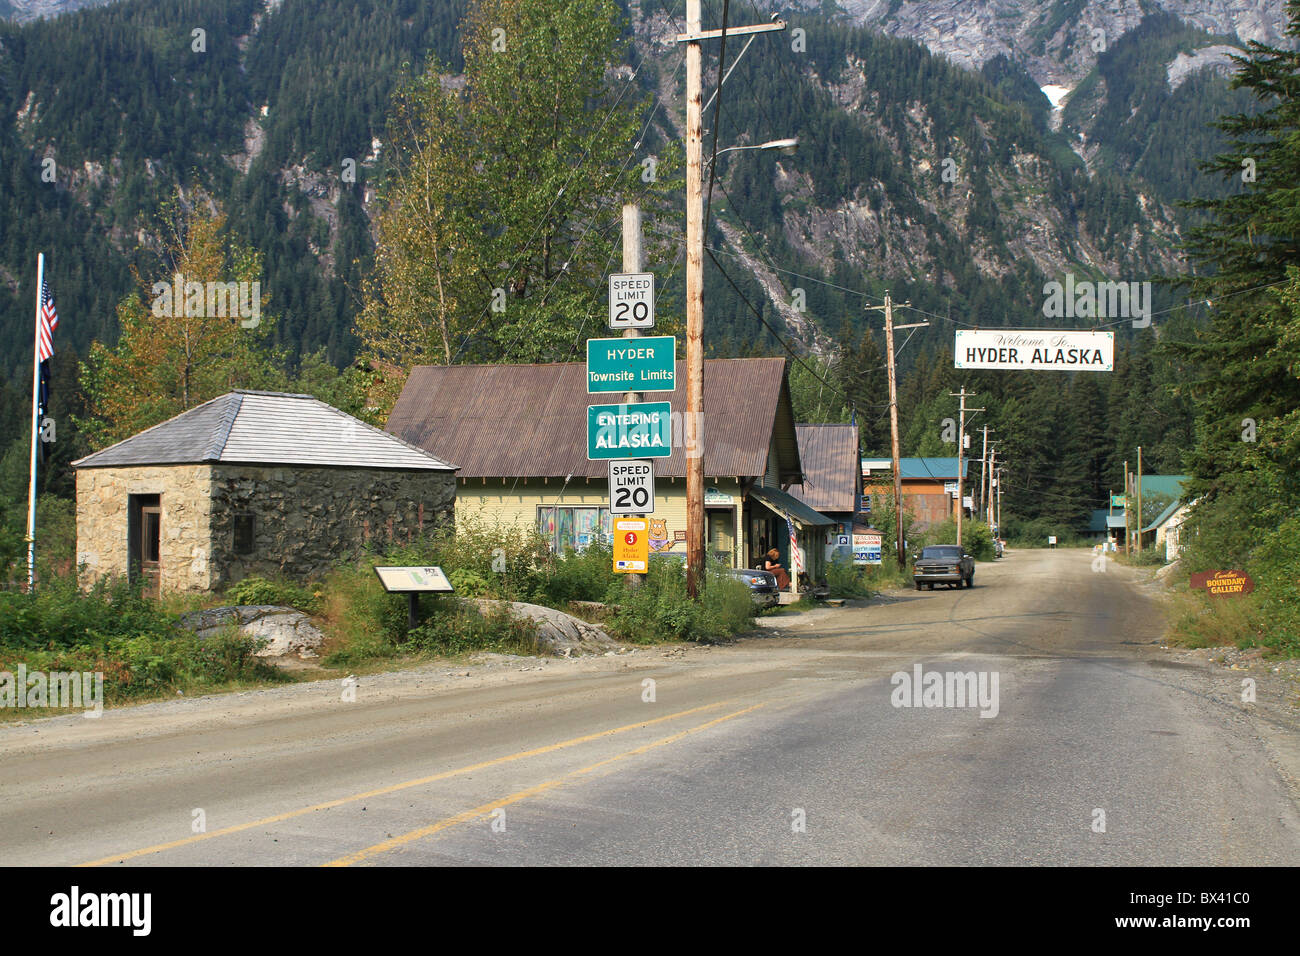 La ville rurale de Hyder, Alaska montrant la rue principale avec des petits bâtiments et l'augmentation des montagnes en arrière-plan. Banque D'Images